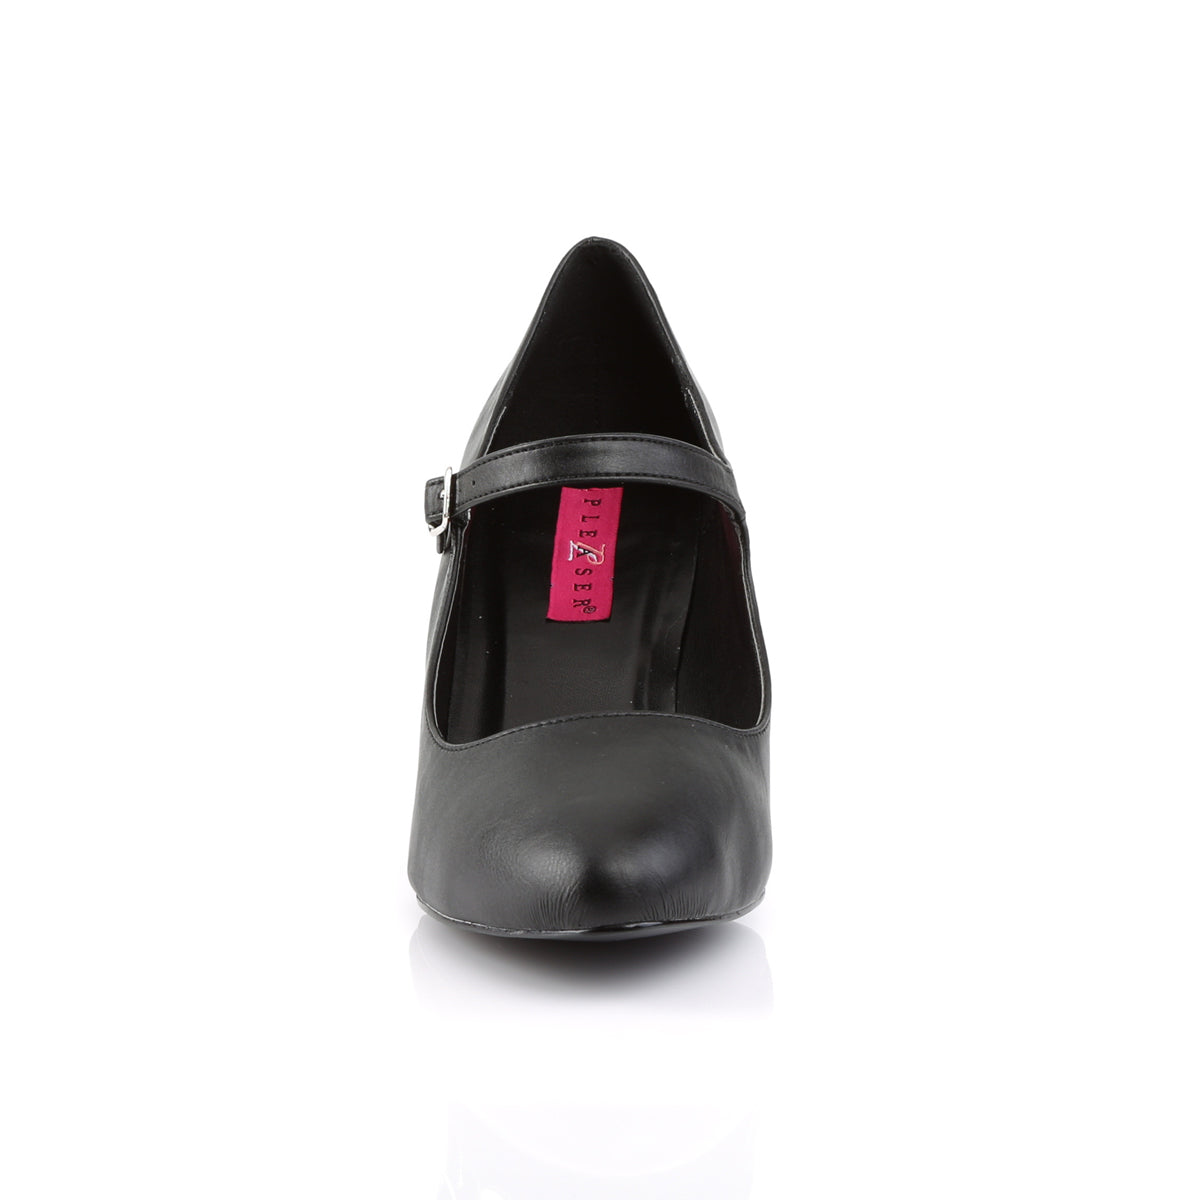 DIVINE-440 Large Size Ladies Shoes Pleaser Pink Label Single Soles Black Faux Leather